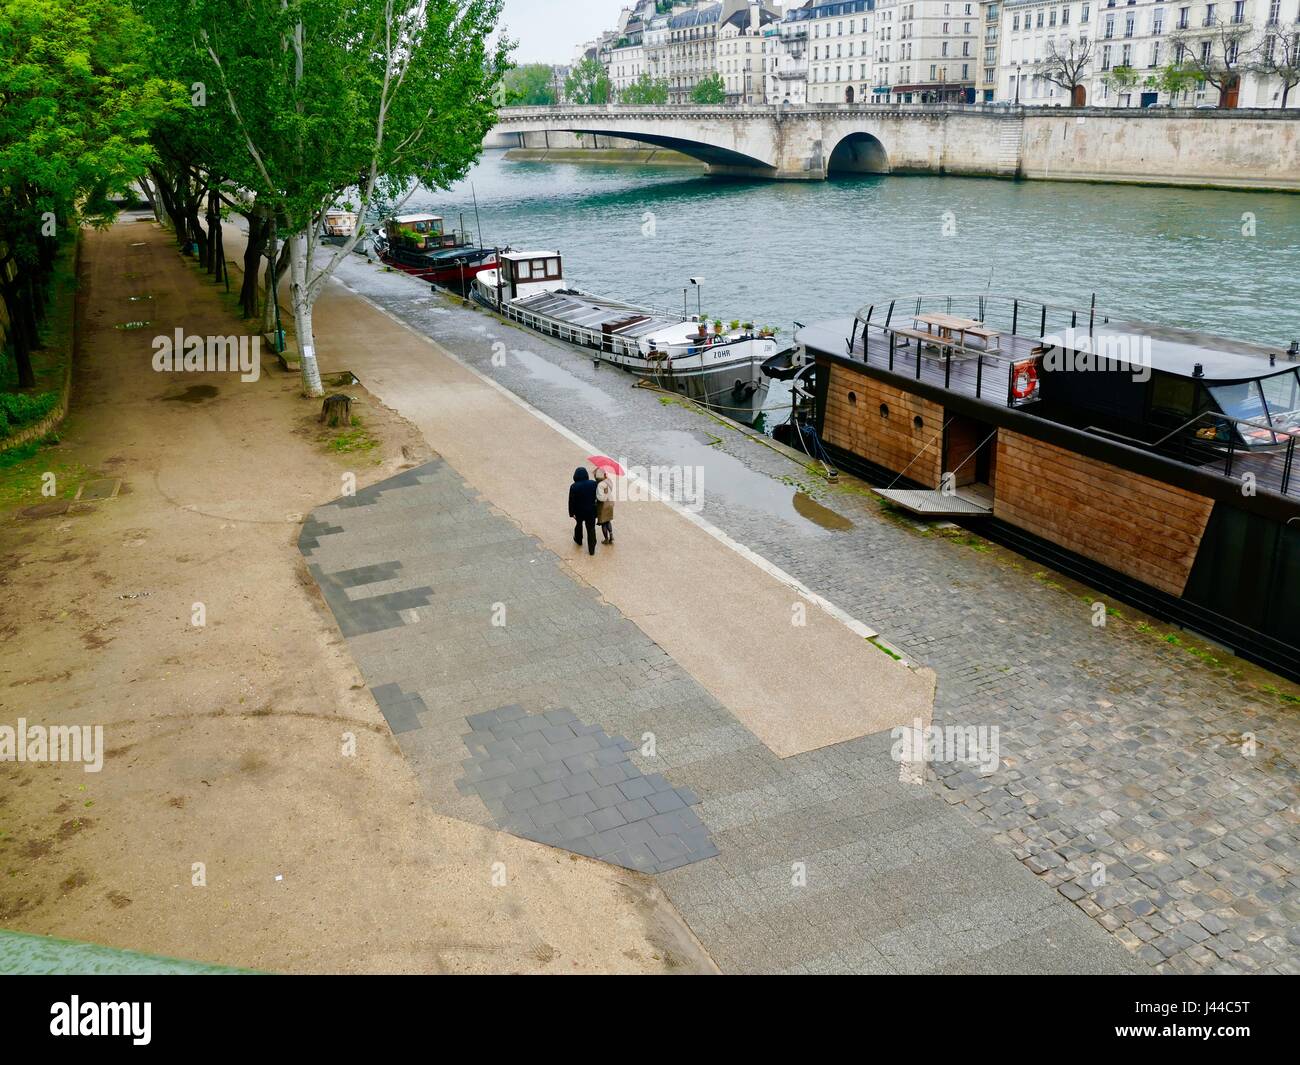 Couple d'imperméables avec parapluie rouge, marcher le long de la rivière Seine et de bateaux dans la pluie. Quai de la Tournelle, Paris, France. Banque D'Images